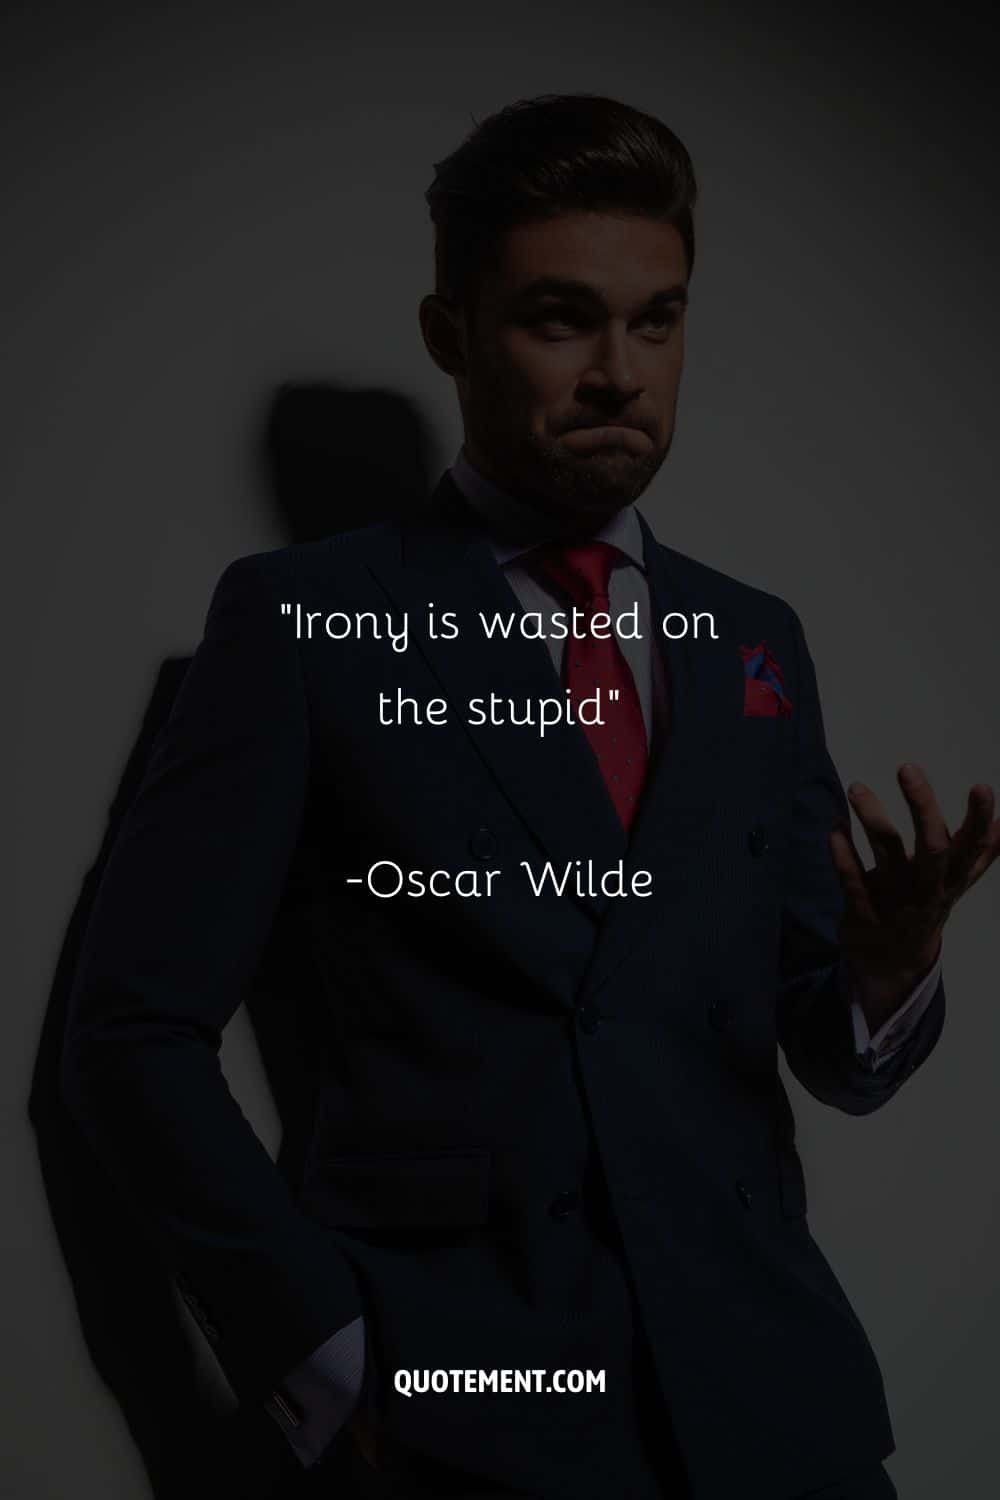 "La ironía se desperdicia en el estúpido"